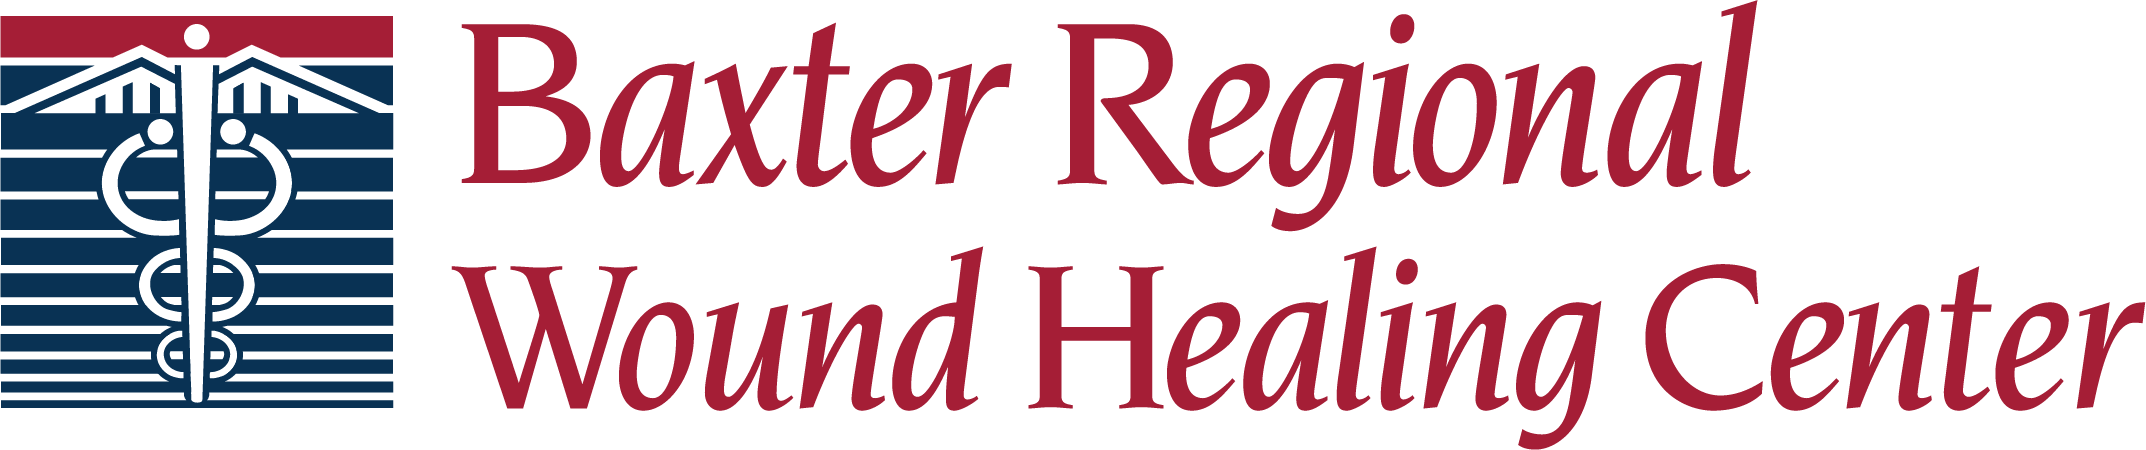 Baxter Regional Wound Healing Center Logo